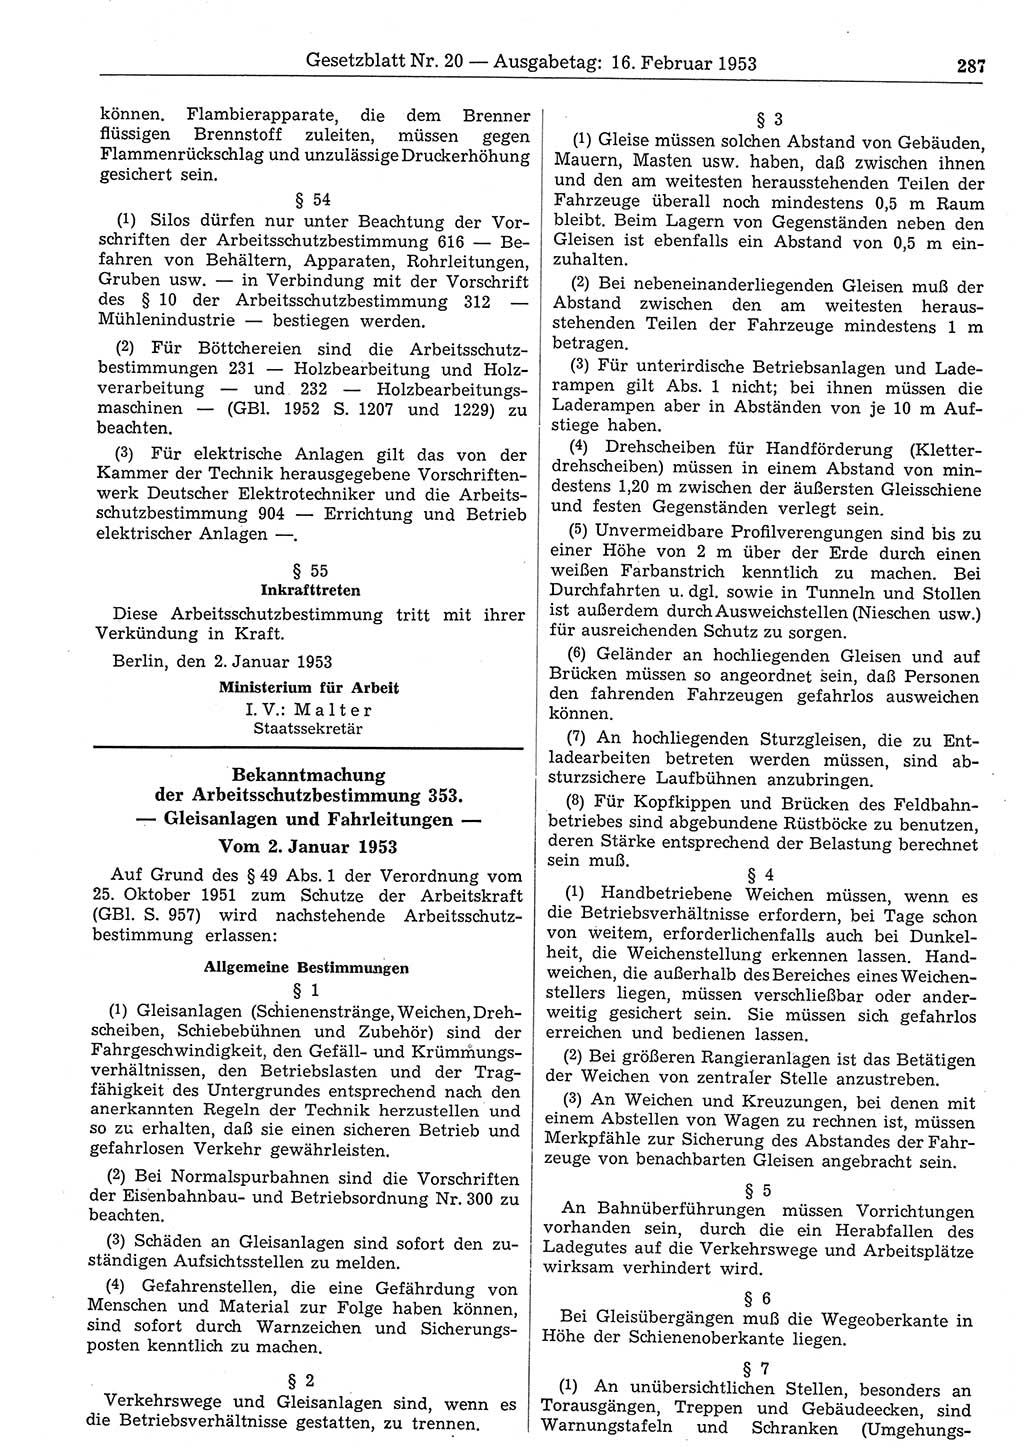 Gesetzblatt (GBl.) der Deutschen Demokratischen Republik (DDR) 1953, Seite 287 (GBl. DDR 1953, S. 287)